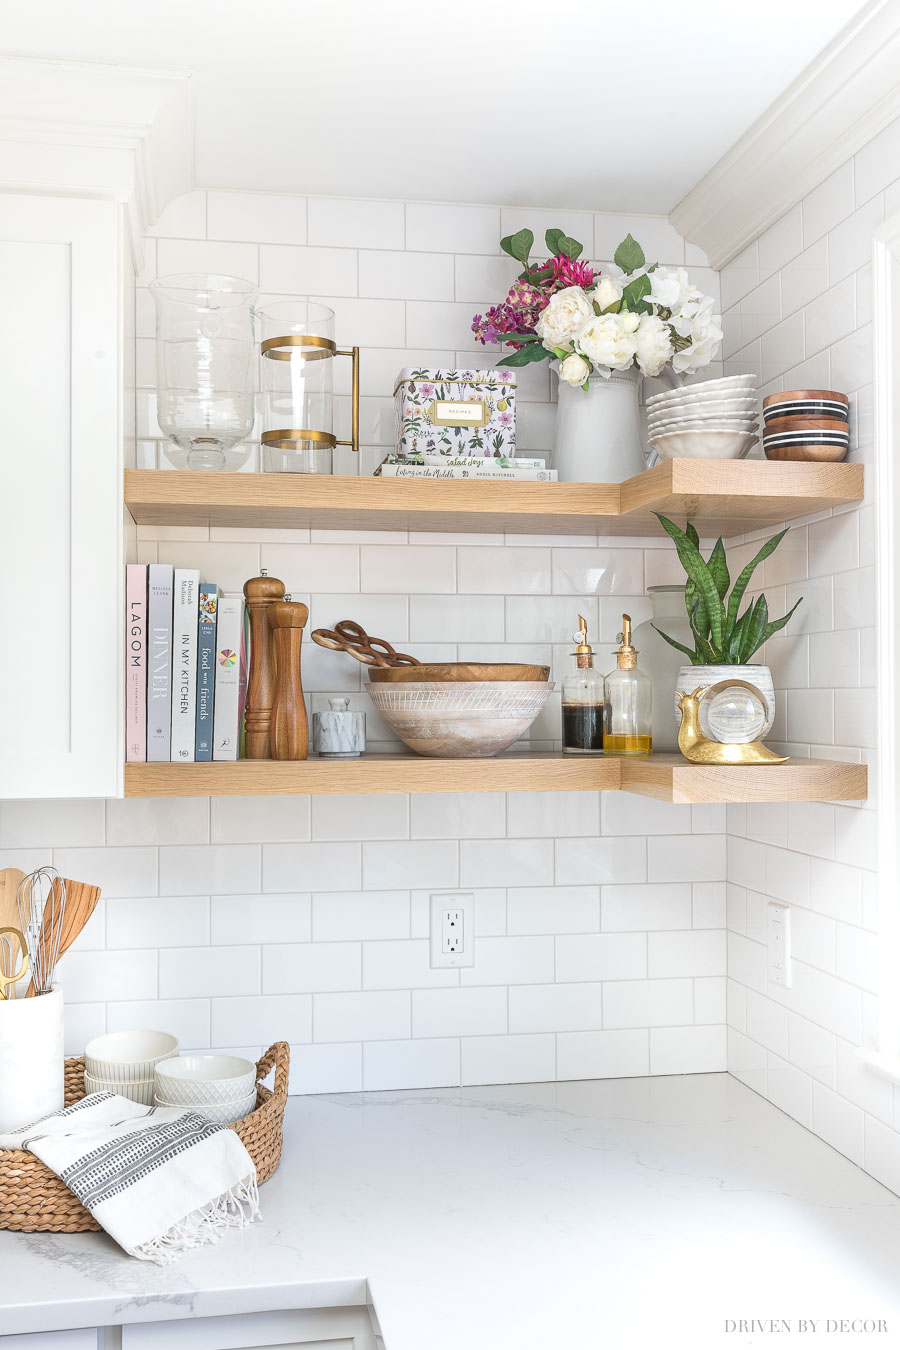 https://www.drivenbydecor.com/wp-content/uploads/2019/04/floating-corner-shelves-styled-kitchen.jpg